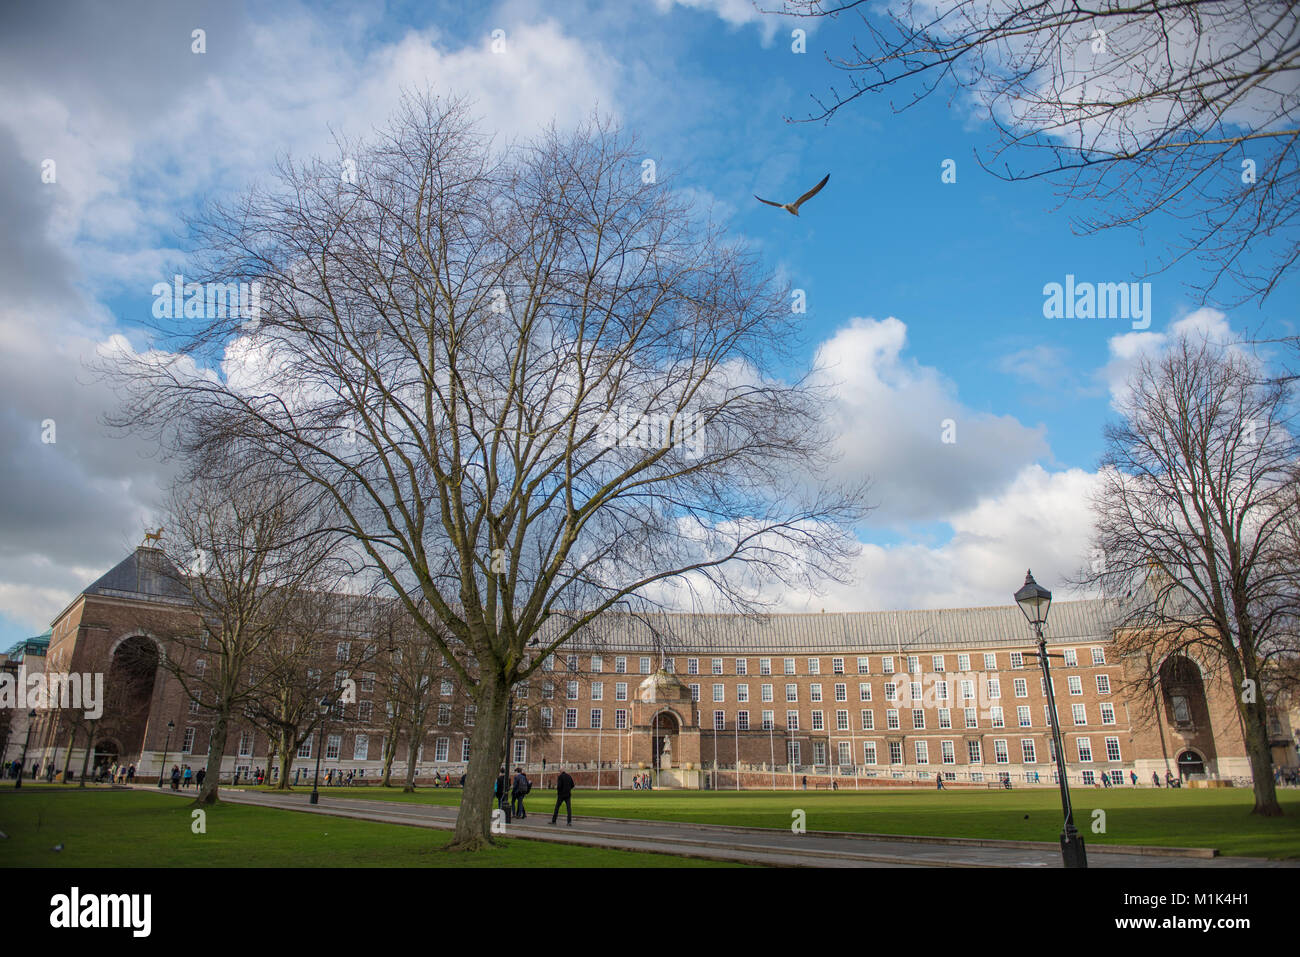 Une vue de la Bristol City Council du collège Green, près de la Cathédrale, agrémenté d'arbres et d'un réverbère, couleurs bleu ciel et nuages, 1 mouette Banque D'Images